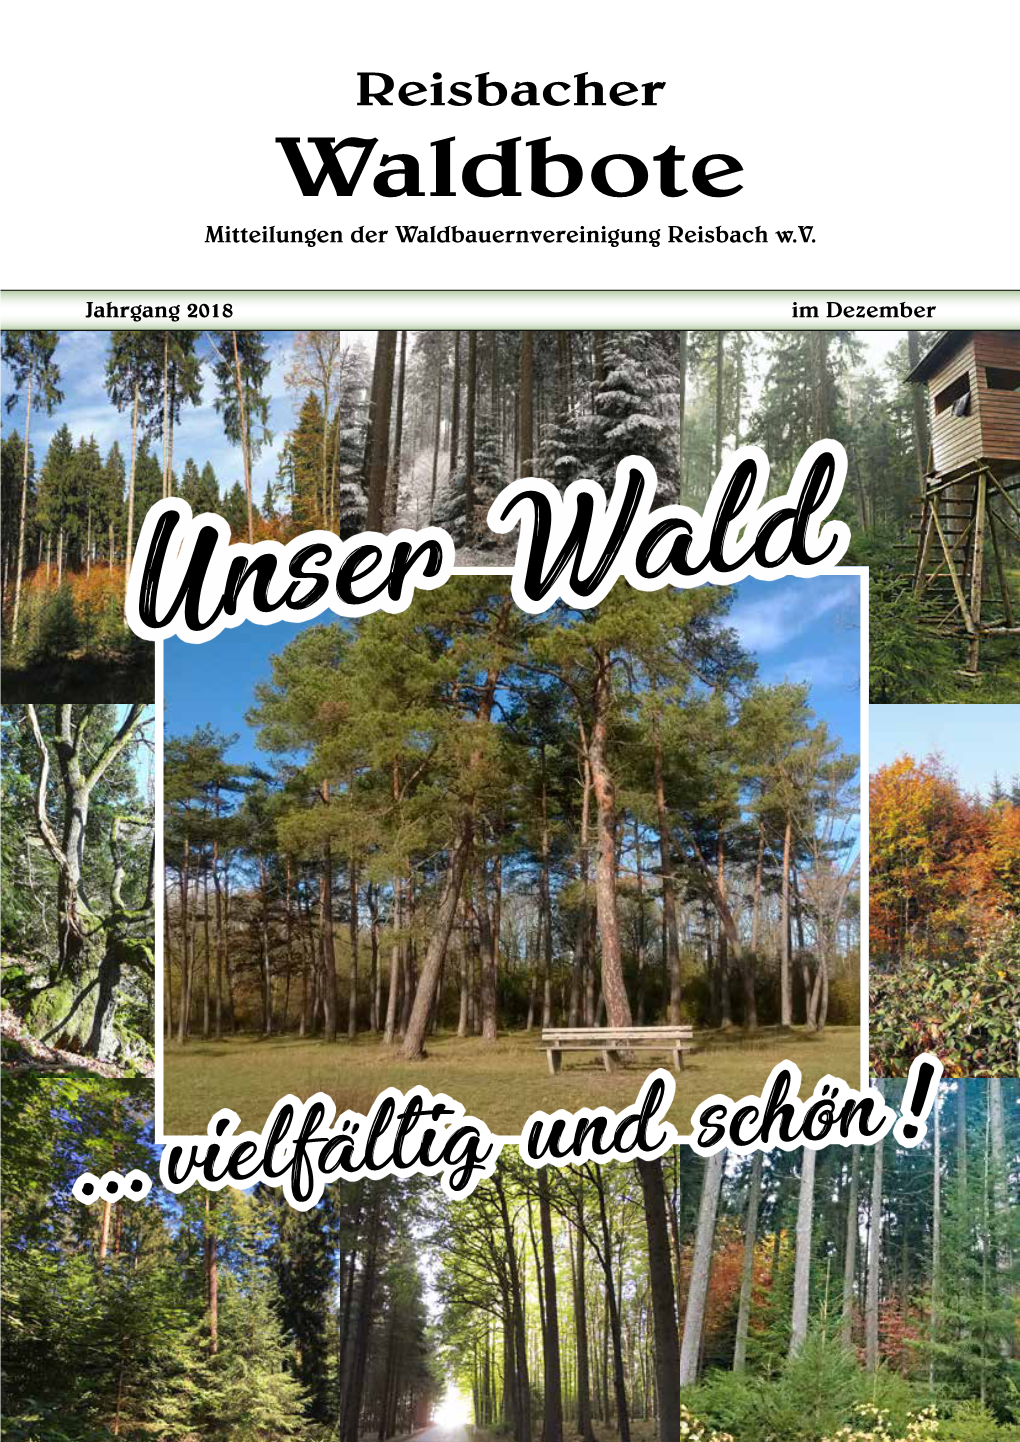 Waldbote Mitteilungen Der Waldbauernvereinigung Reisbach W.V